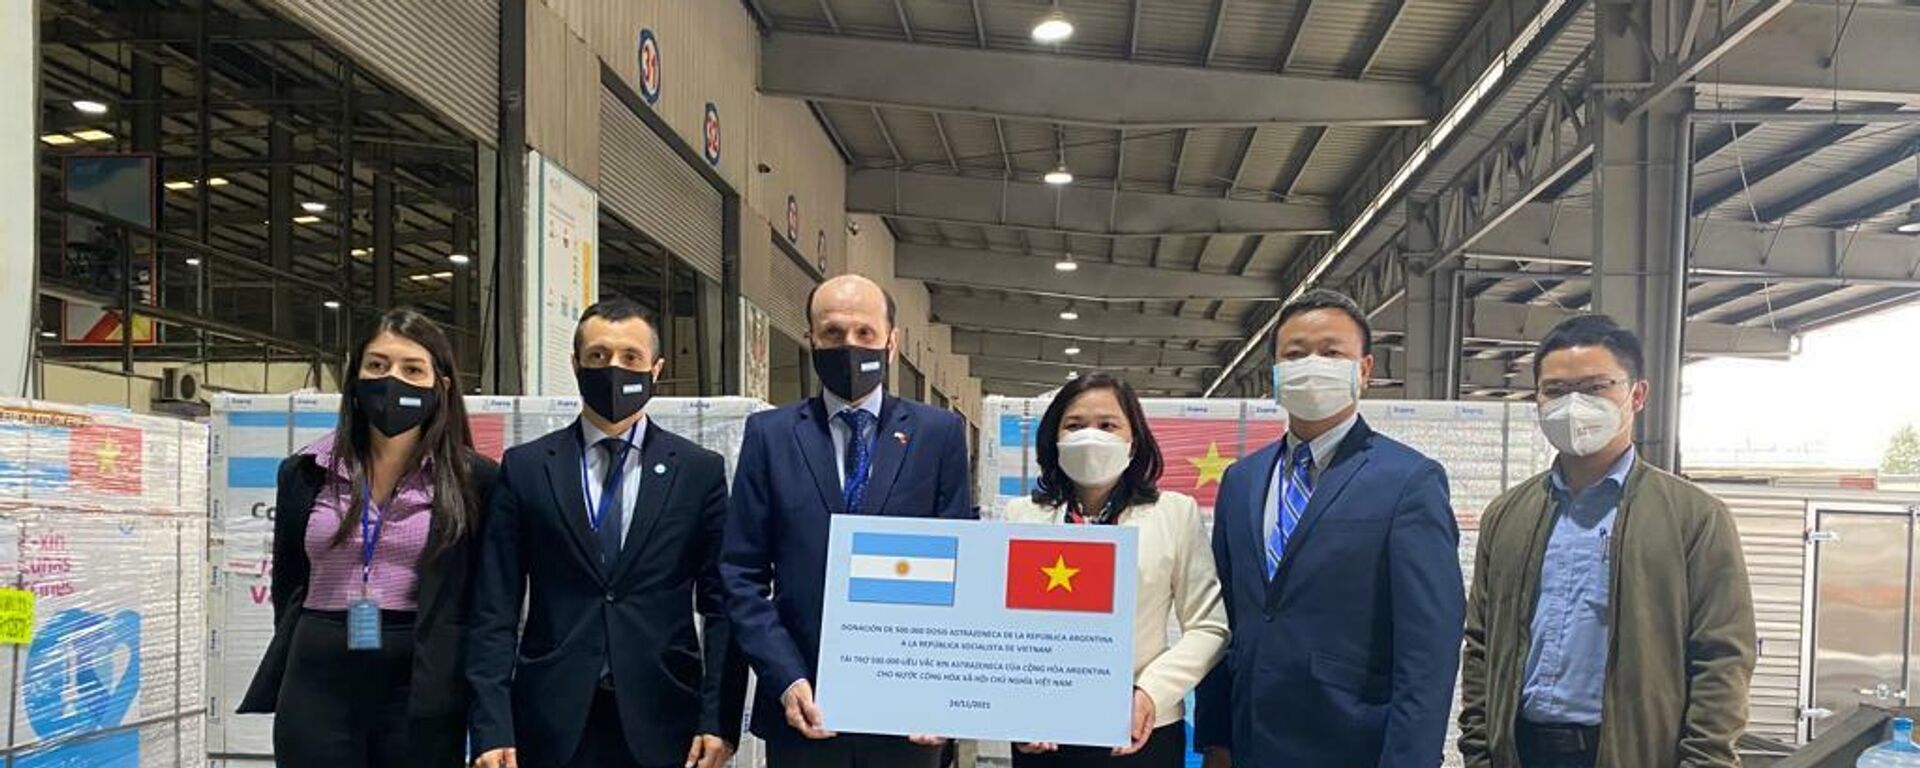 Llega a Vietnam una partida de 500.000 vacunas contra el COVID-19 donadas por Argentina - Sputnik Mundo, 1920, 24.11.2021